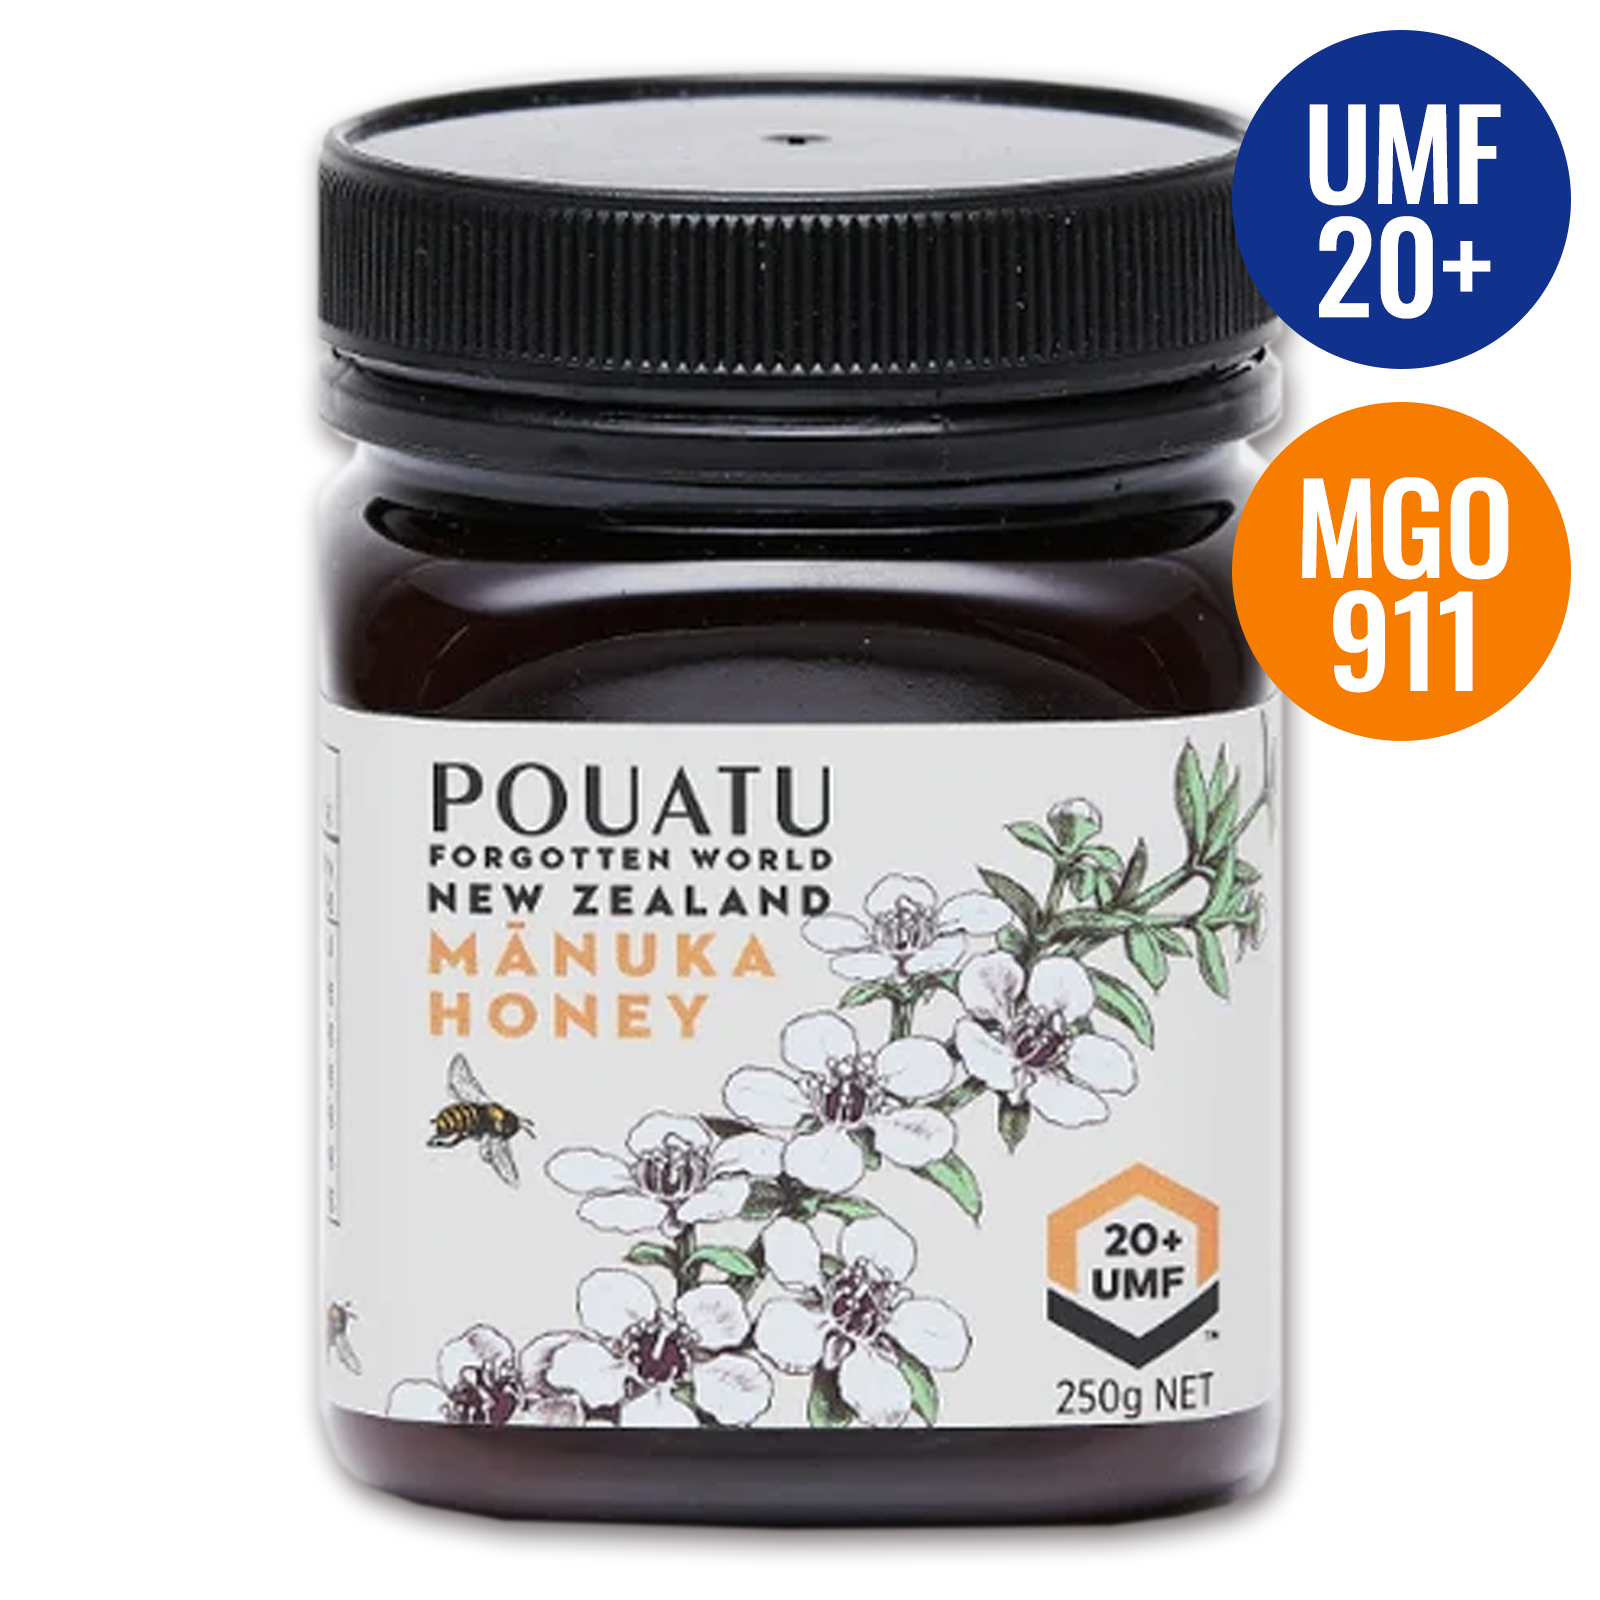 UMF認証 高品質 天然 蜂蜜 マヌカハニー UMF20+ MGO911 ニュージーランド産 (250g) ホライズンファームズ